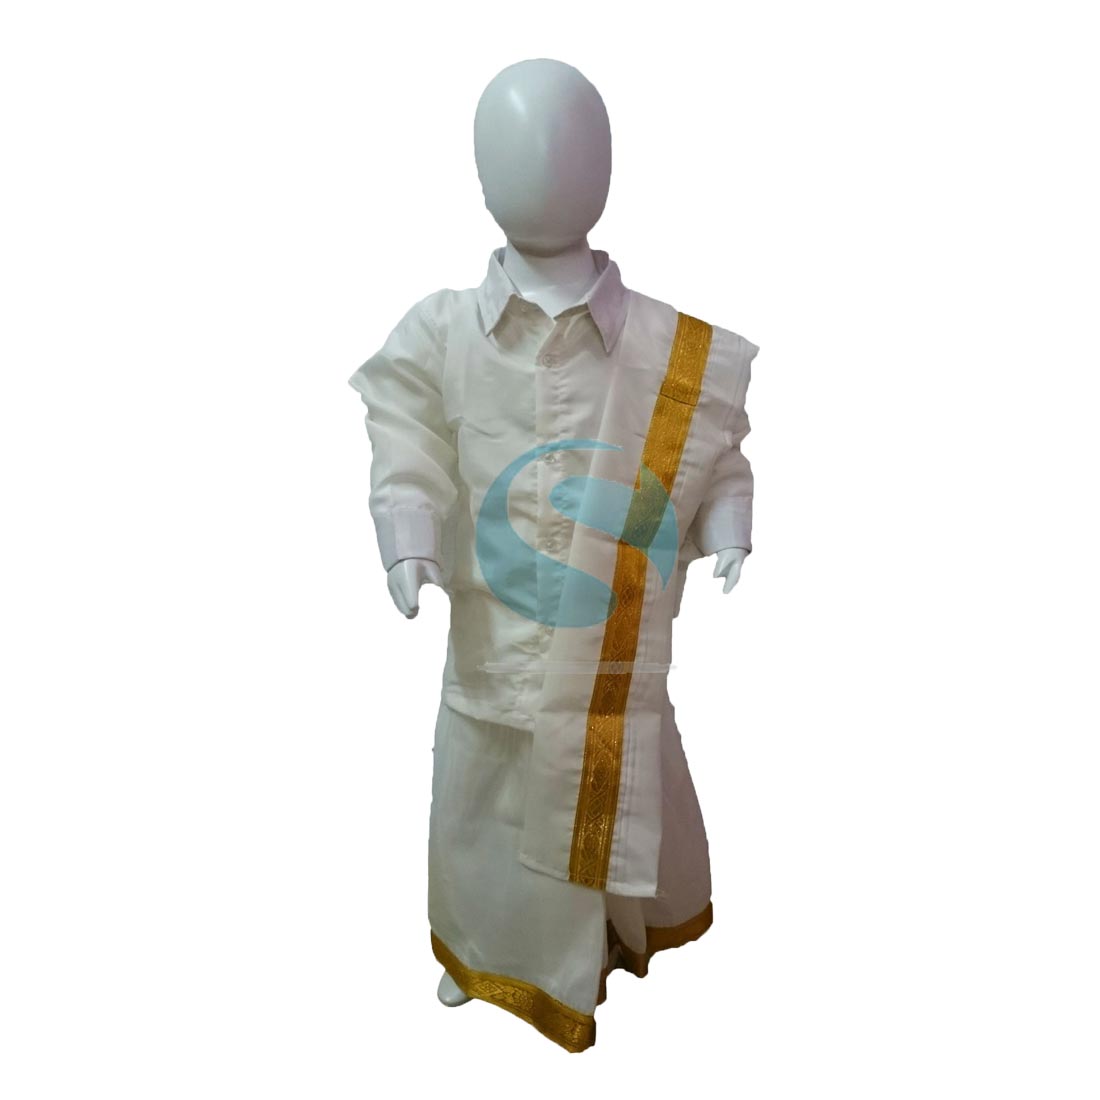 Traditional Kerala Dresses - Lungi, Mundum-Neriyathum | Holidify